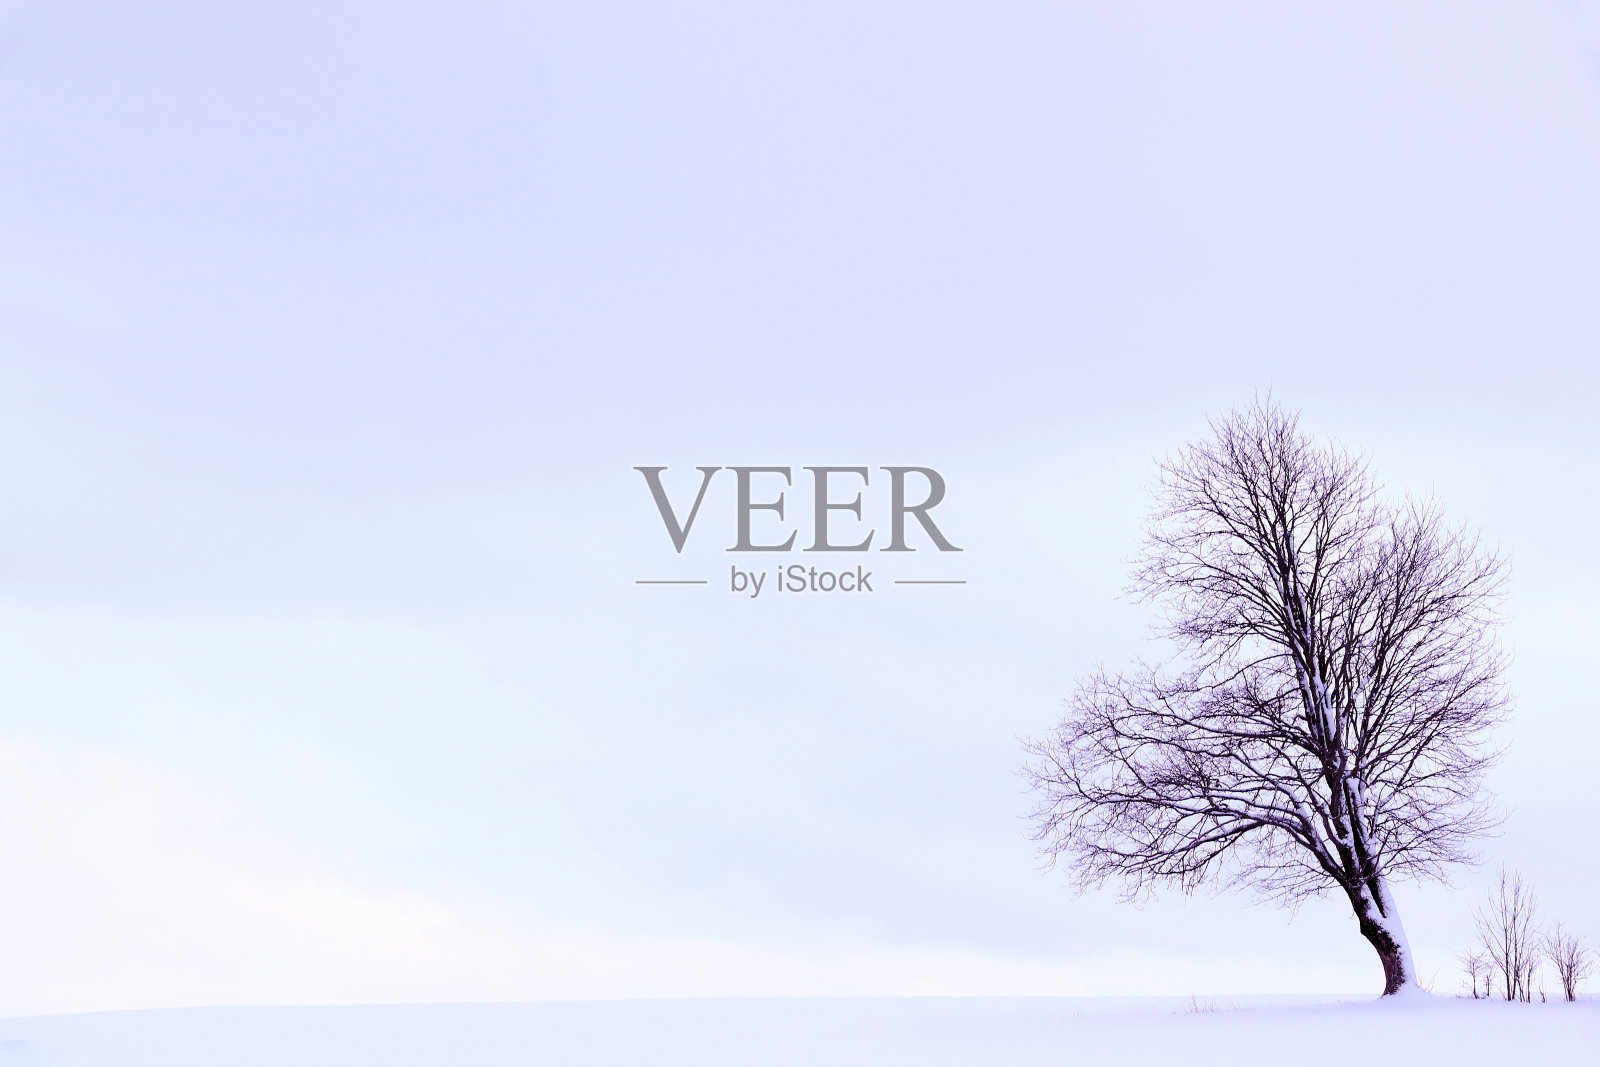 极简主义的冬季景观:一棵树在白雪覆盖的紫罗兰色田野上照片摄影图片